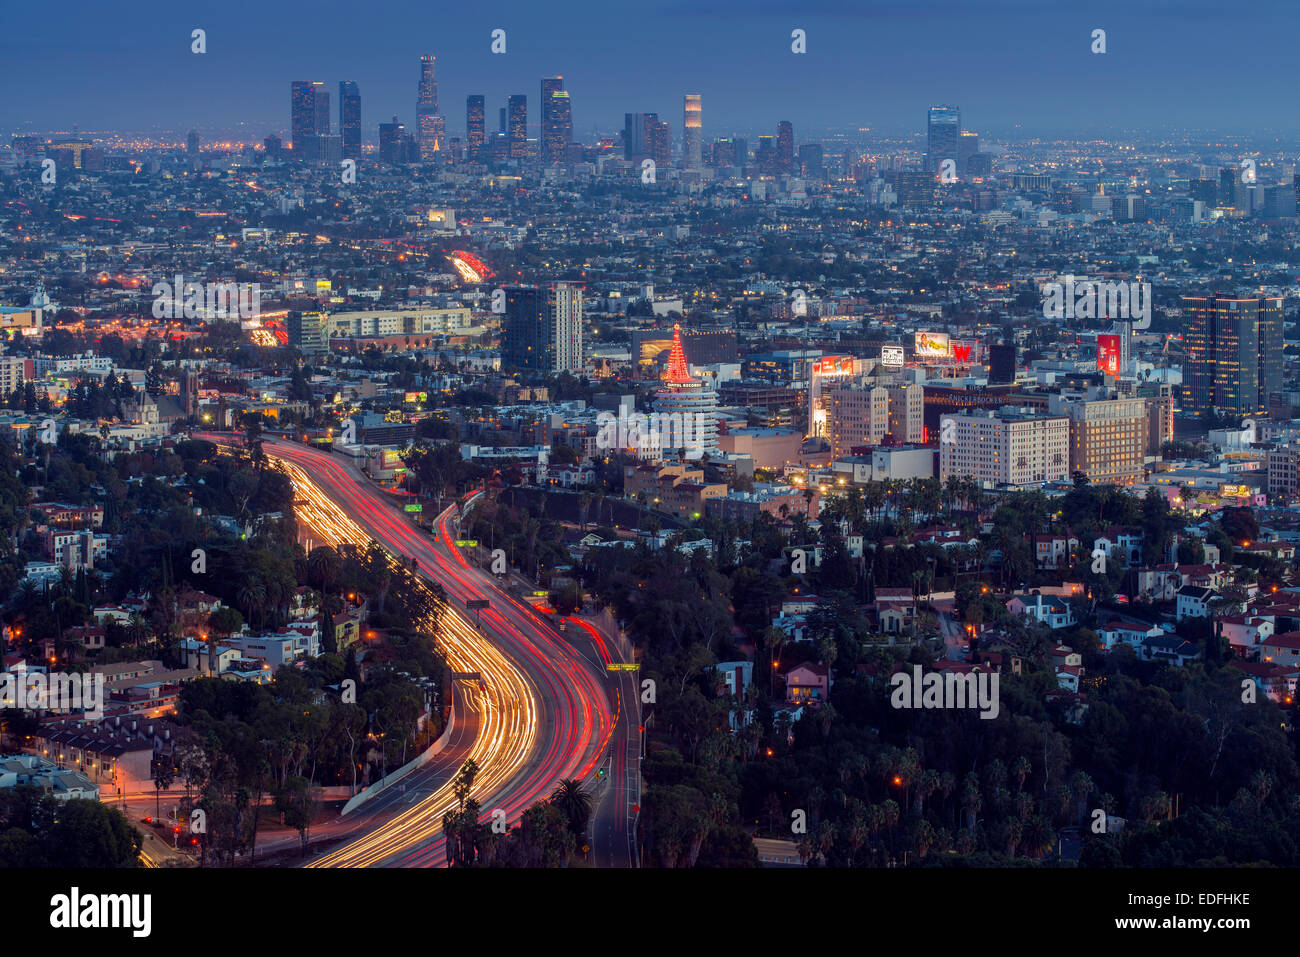 Night city skyline, Los Angeles, California, USA Stock Photo